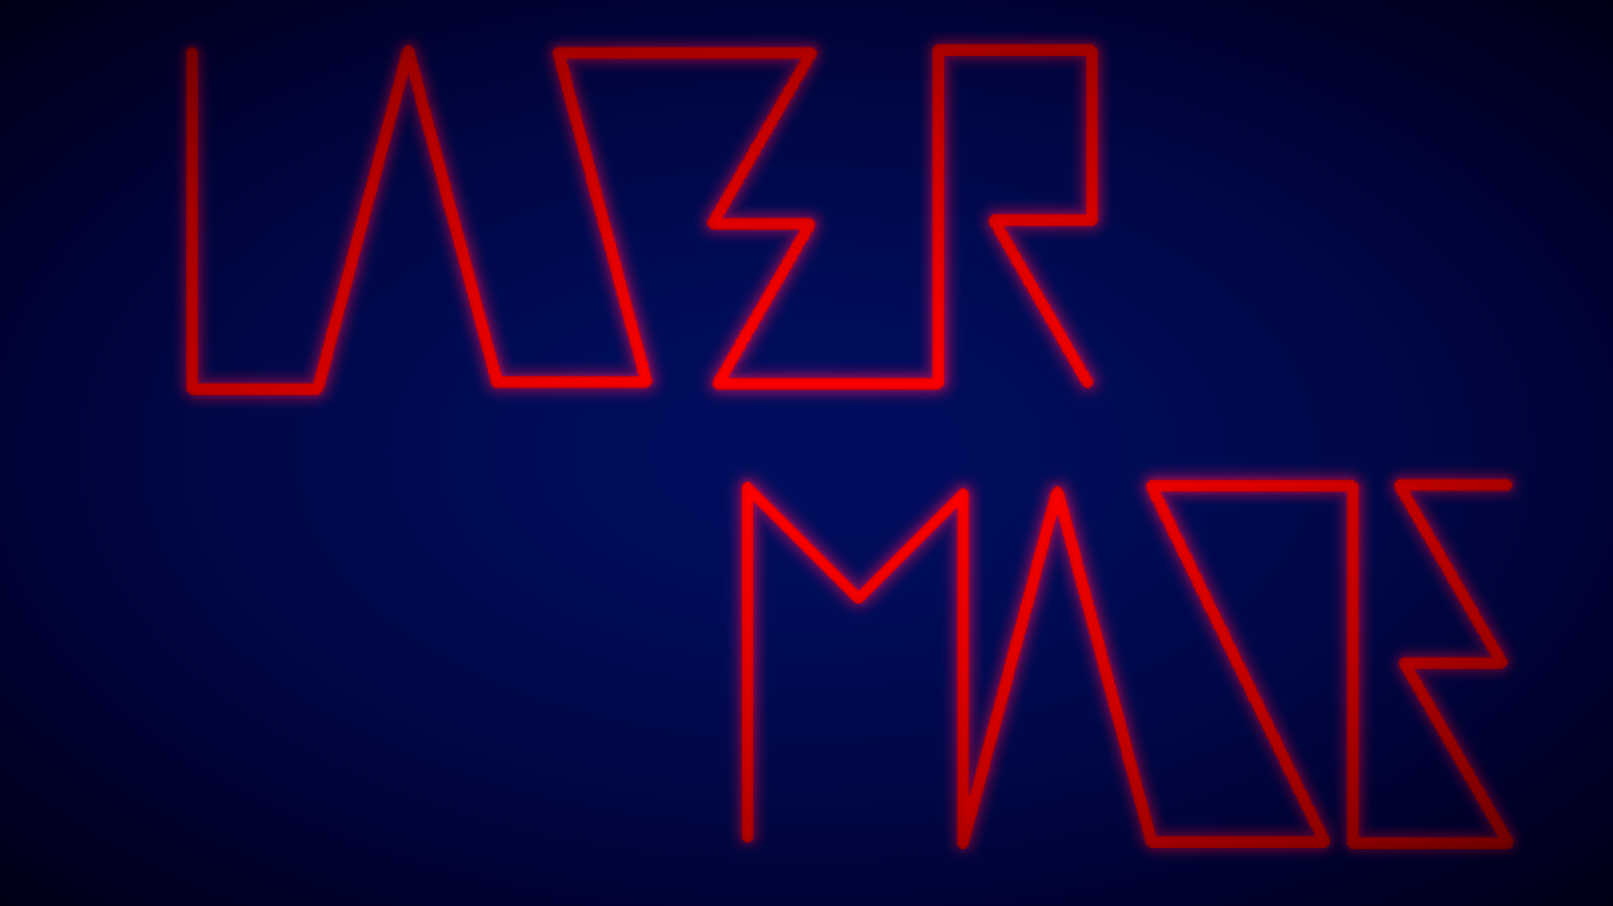 Lazer Maze